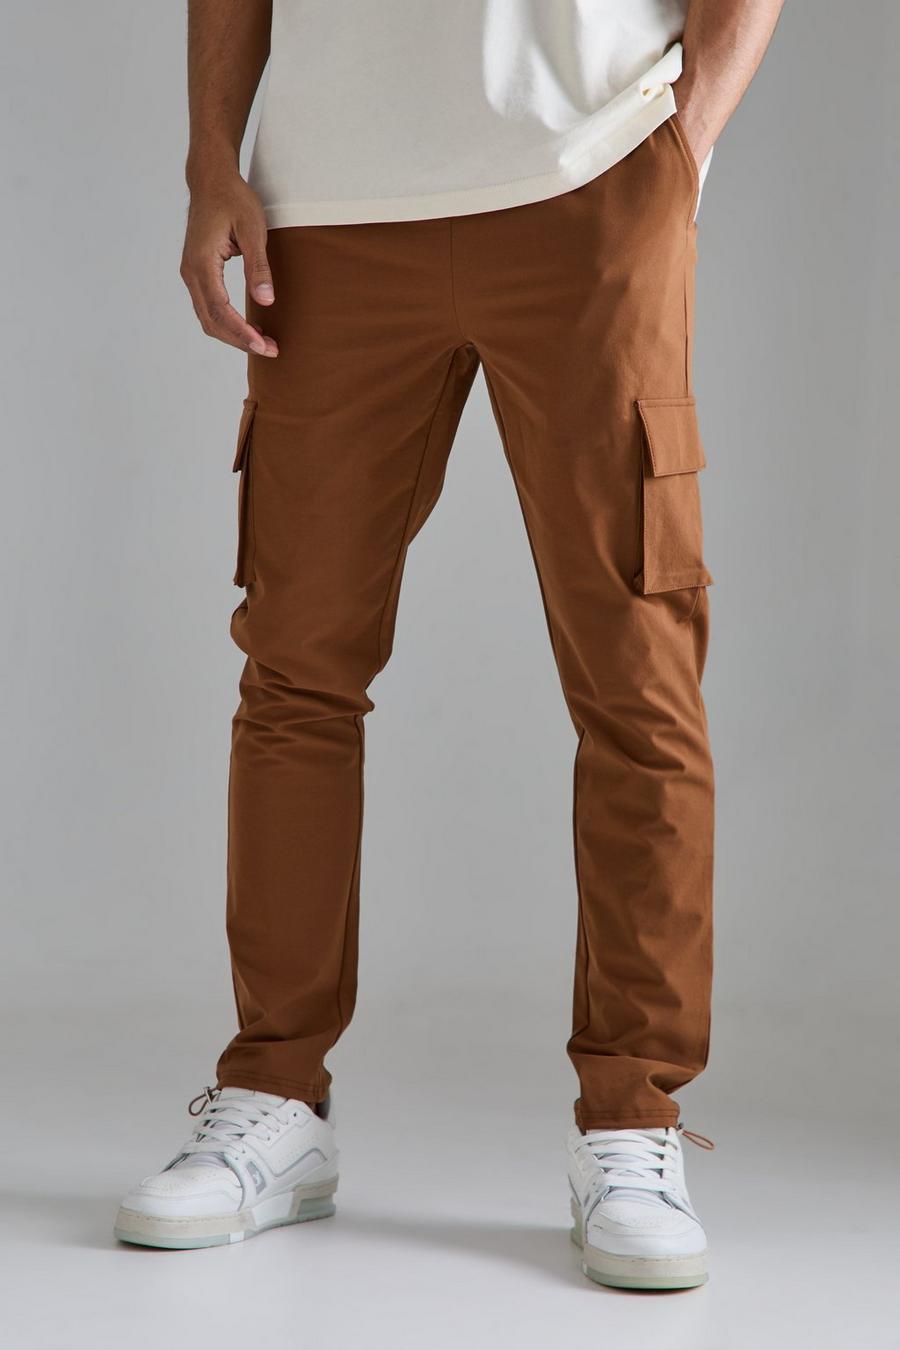 Pantaloni Cargo Skinny Fit in Stretch tecnico leggero elasticizzato, Chocolate